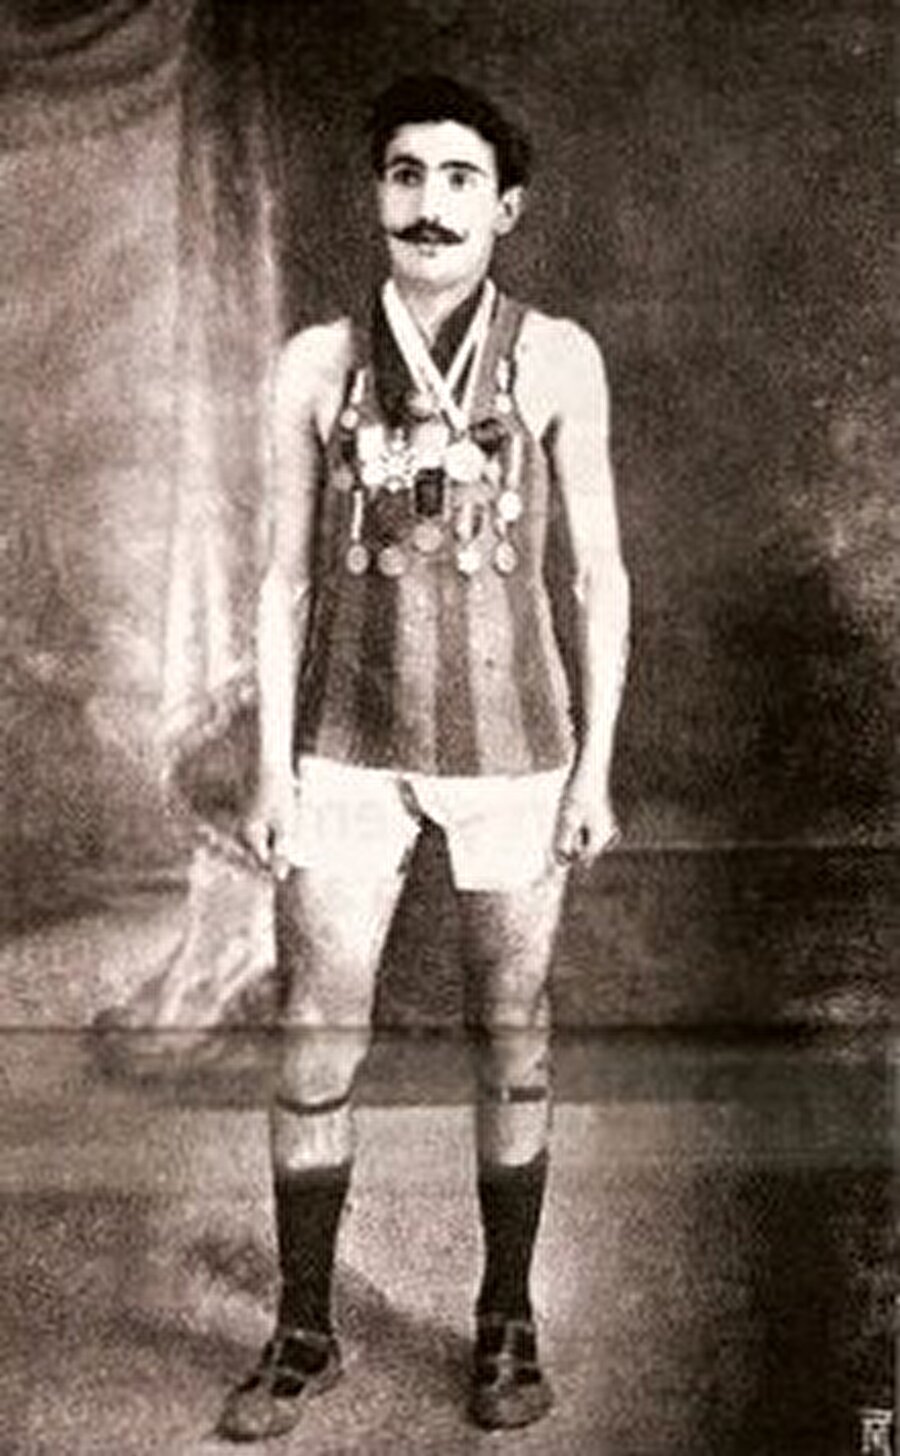 Francisco Lazaro 

                                    1891 doğumlu Portekizli Francisco Lazaro ülkesinde üç maratonda birincilik elde ettikten sonra 1912 İsveç Yaz Oyunları'na gönderildi. Portekiz Lizbon'da otomobil fabrikasında çalışan Lazaro, amatör bir sporcuydu. Oyunlara katılan Lazaro, maraton start aldıktan kısa bir süre sonra fenalaştı ve yaşamını yitirdi. O dönemde Lazaro'nun sıvı kaybından dolayı ani şekilde vefat ettiği açıklandı.
                                